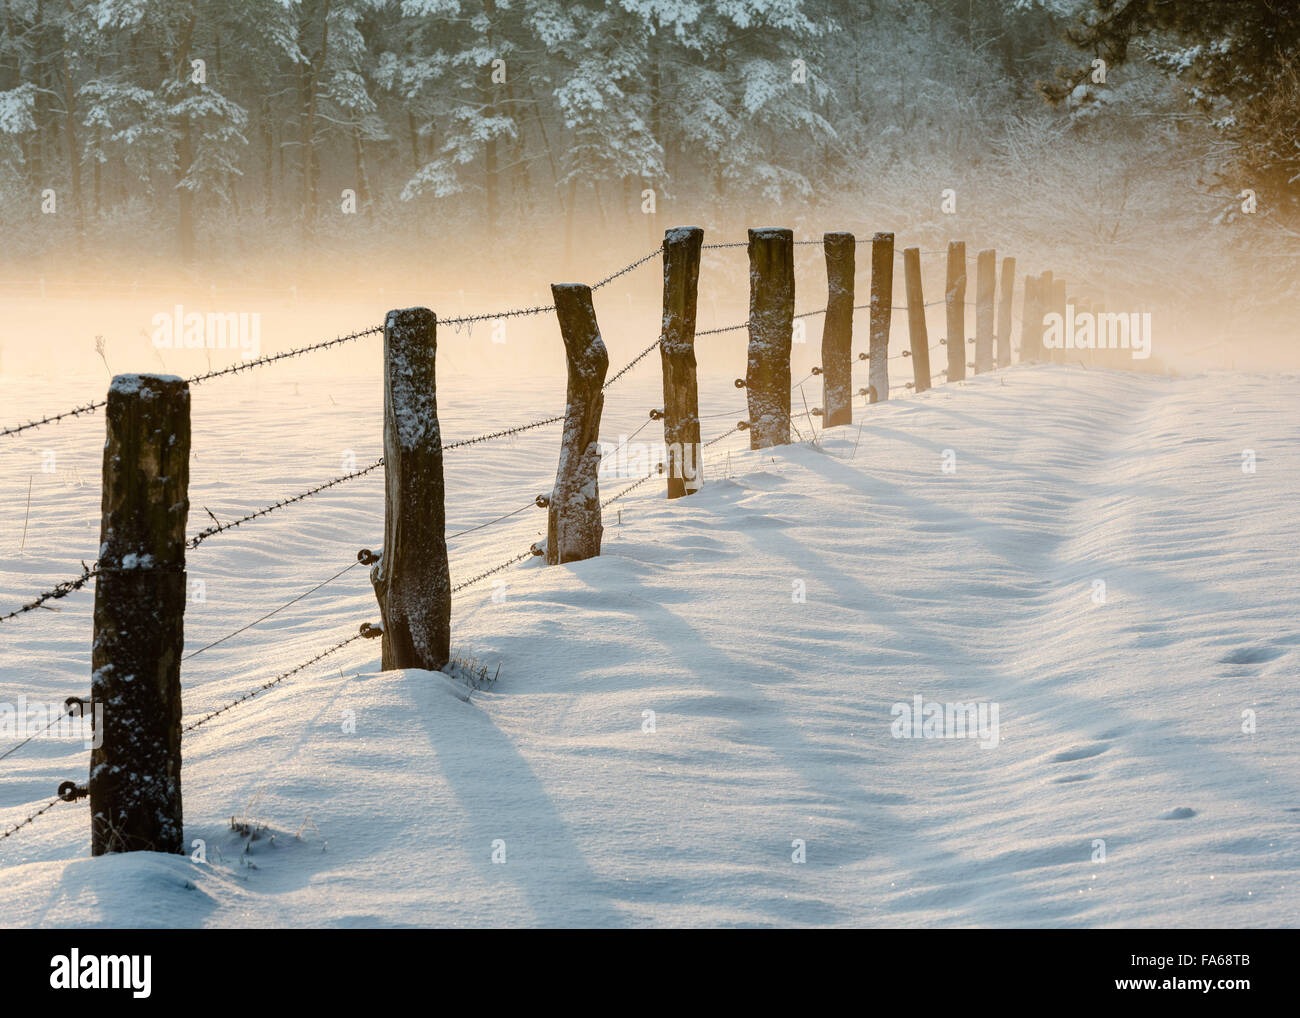 Poteaux de bois avec des barbelés dans la neige, de Mookerheide, Pays-Bas Banque D'Images